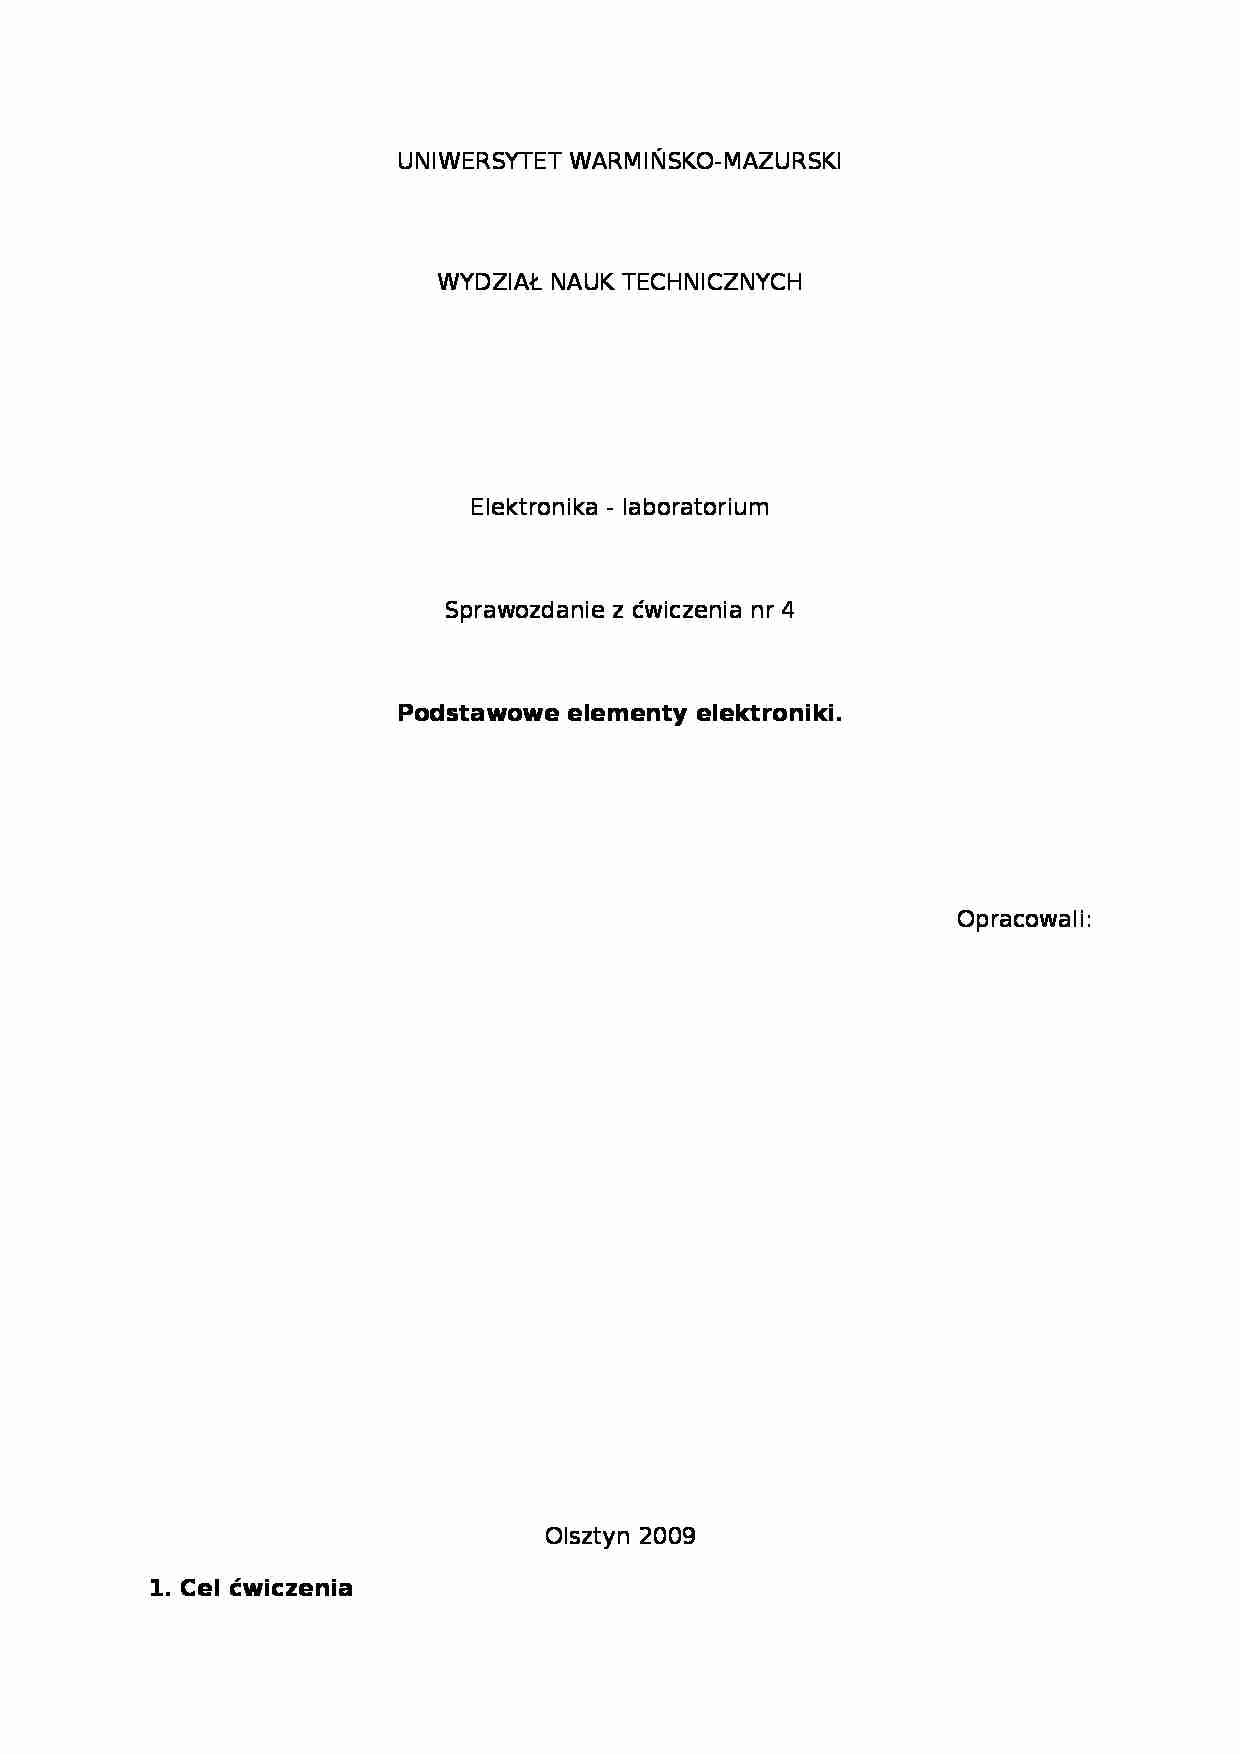 [LABORATORIA] Sprawozdanie podstawowe elementy elektroniki - strona 1